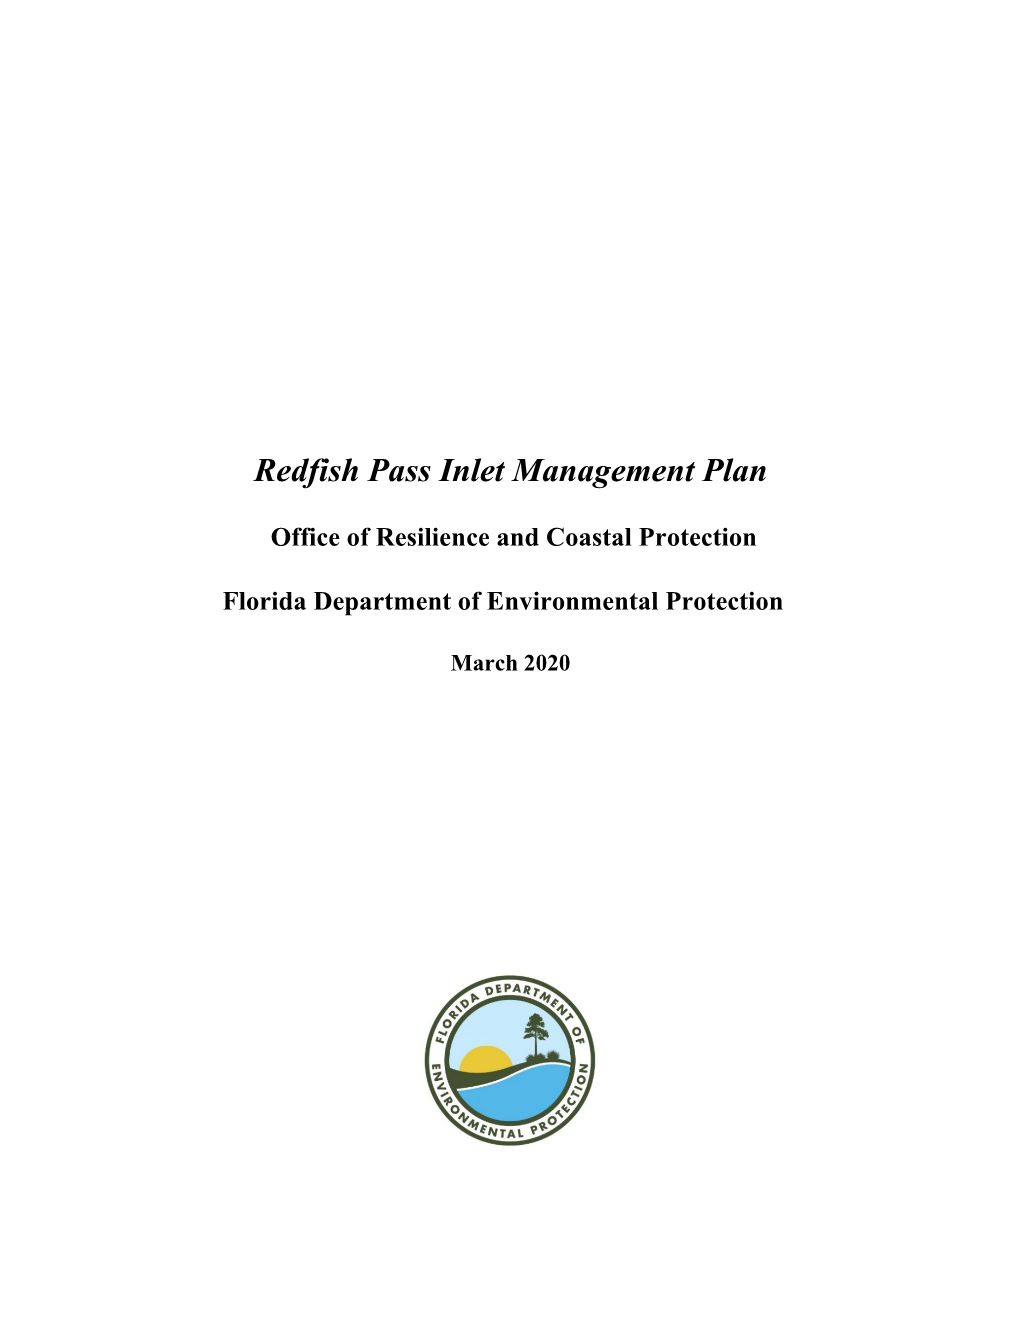 Redfish Pass Inlet Management Plan 03-2020